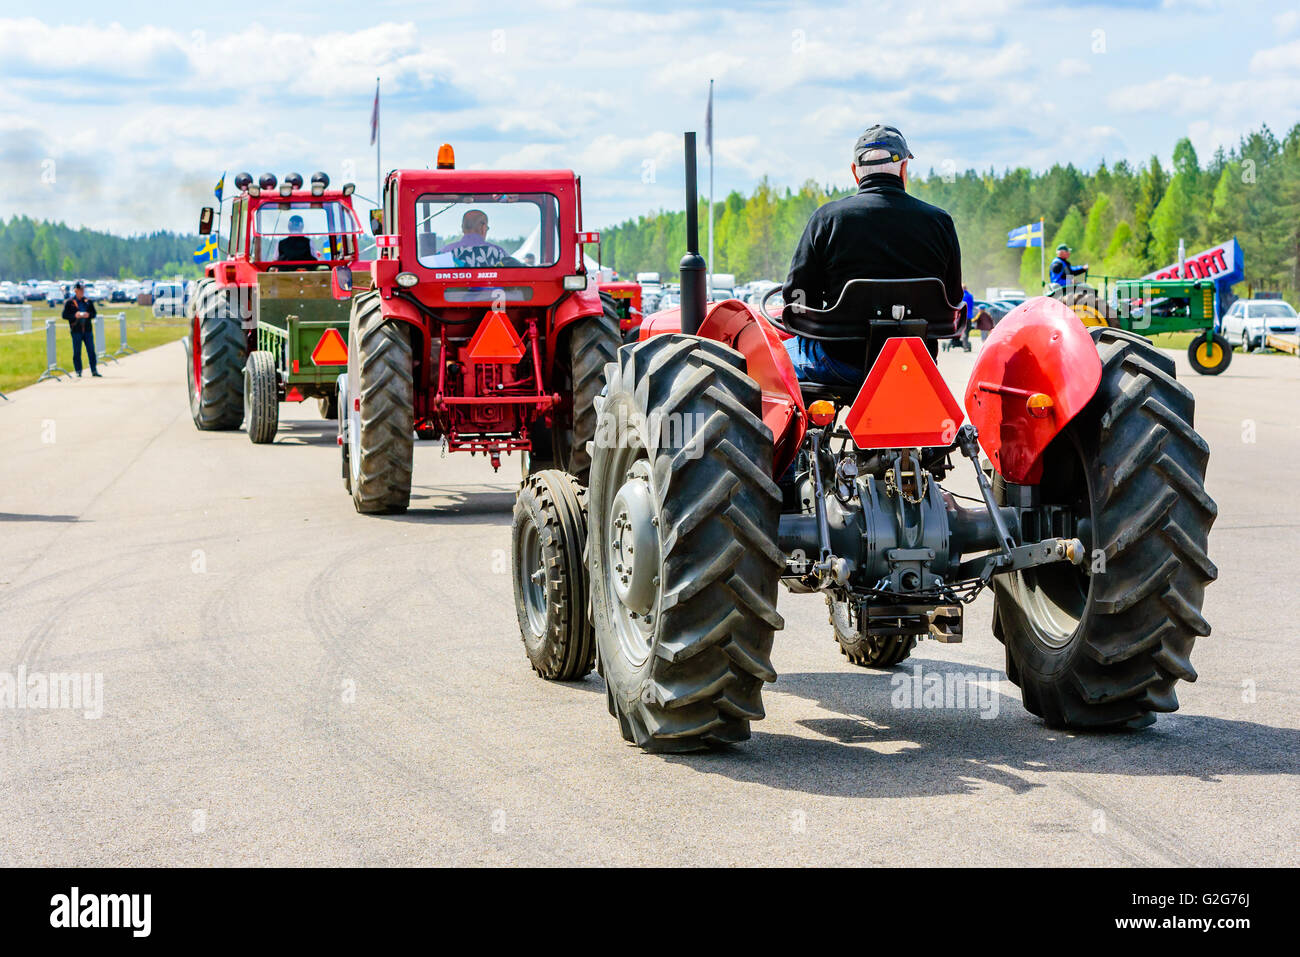 Emmaboda, Schweden - 14. Mai 2016: Wald und Traktor (Skog Och Traktor) fair. Klassische Oldtimer Traktoren auf der Parade. Hier ein rotes 1964 Stockfoto